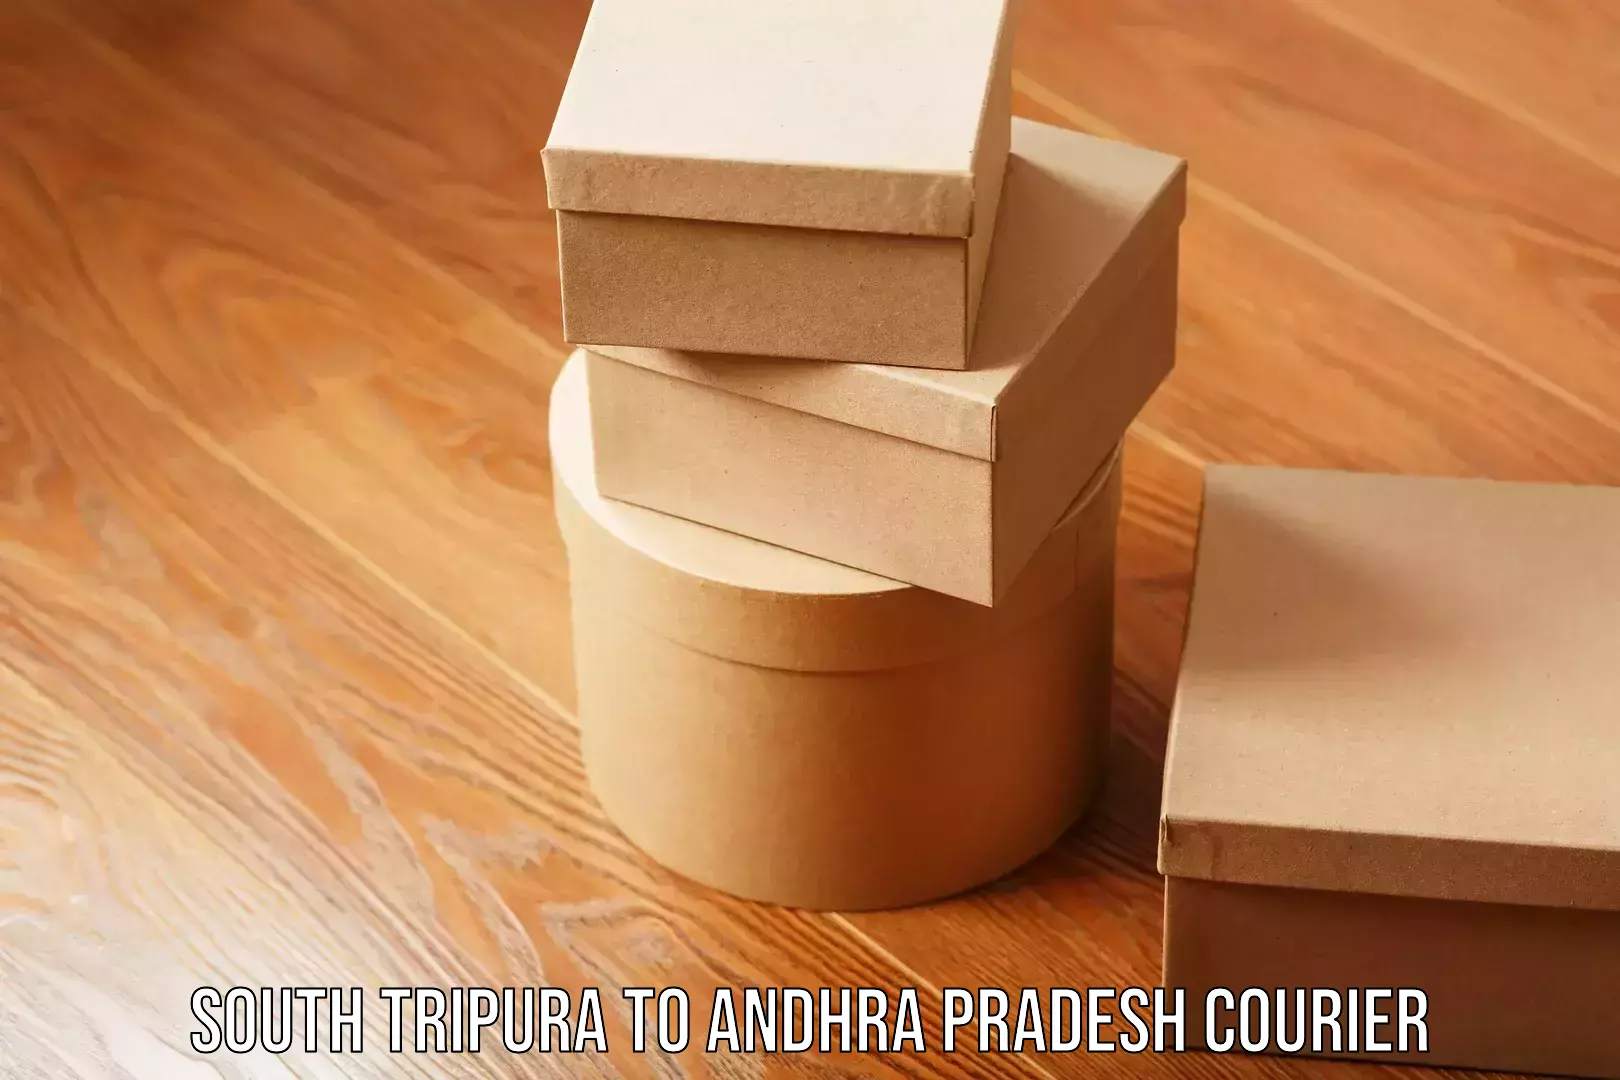 Domestic courier South Tripura to Andhra Pradesh